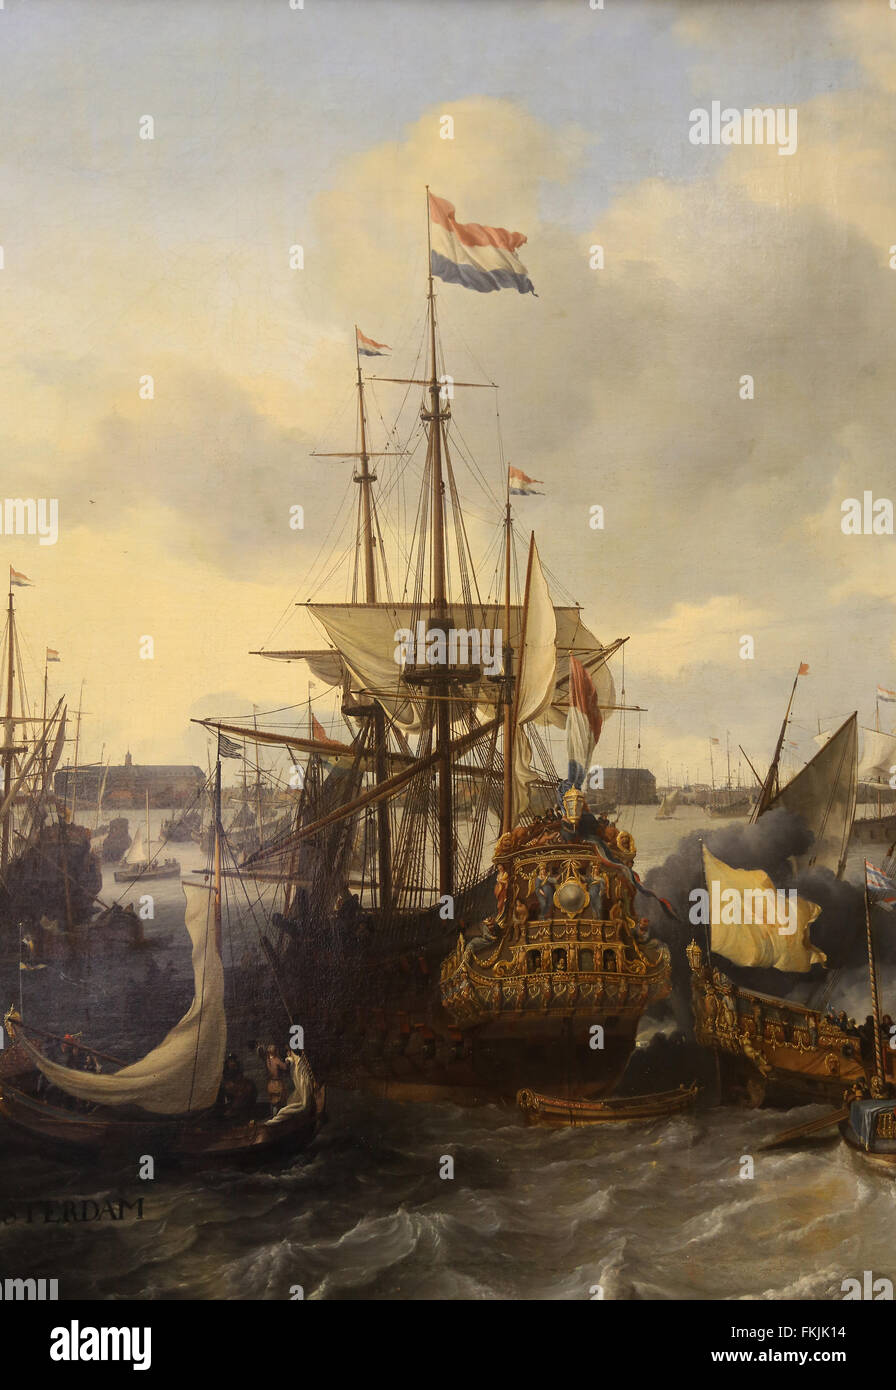 Lufolf Bakhuizen (1630-1708). Germa-Born Dutch Painter. Vue d'Amsterdam avec des navires sur l'Ij, 1666. Louvre. Banque D'Images